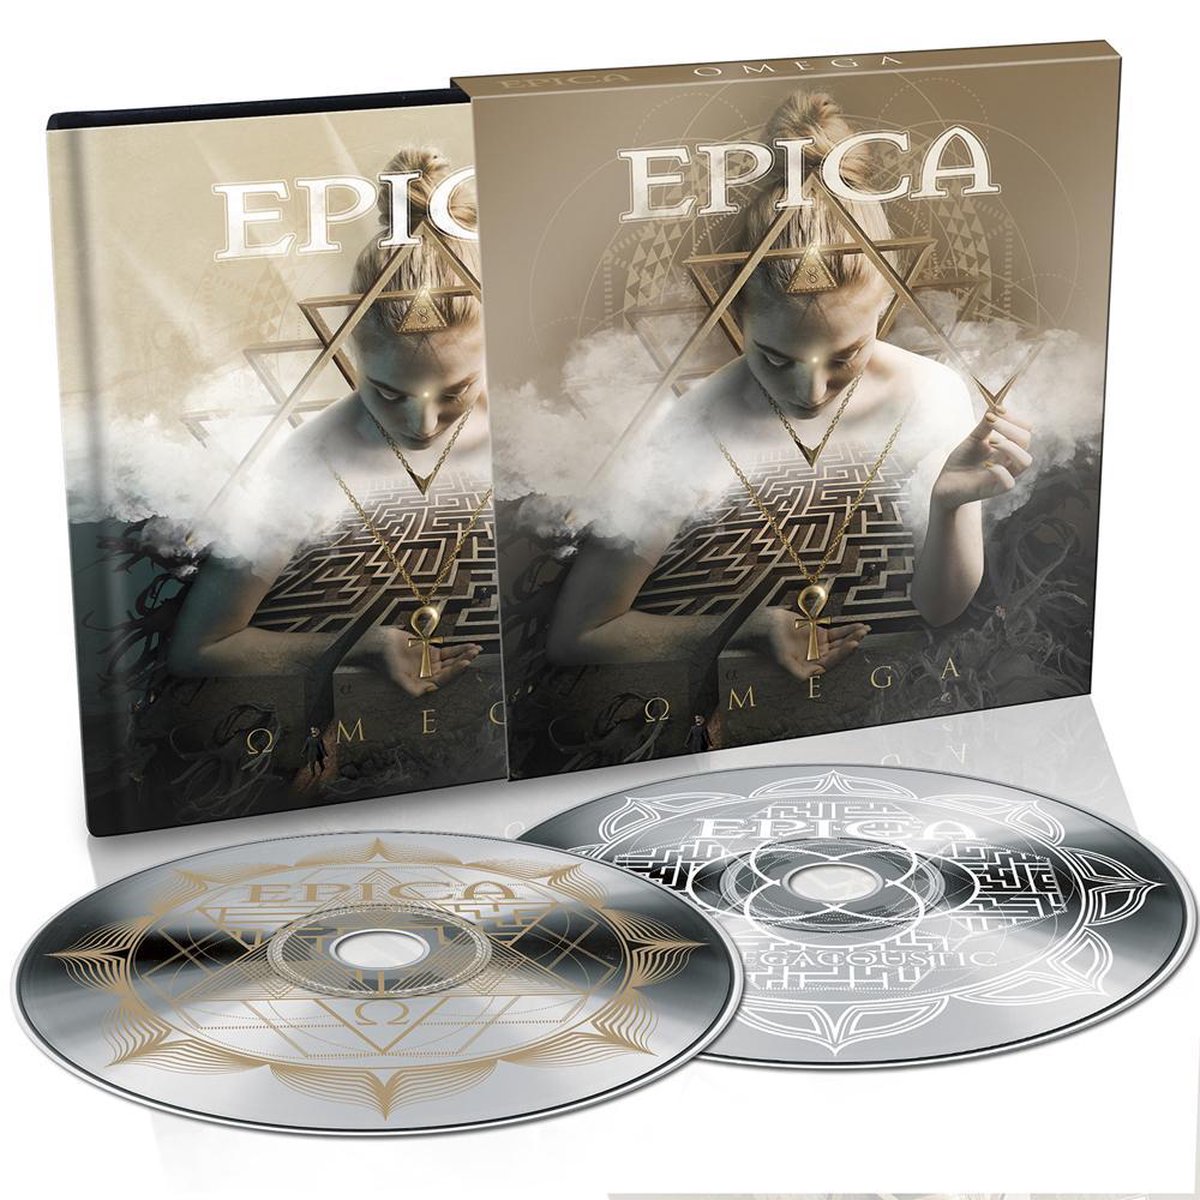 Omega (2CD) - Epica